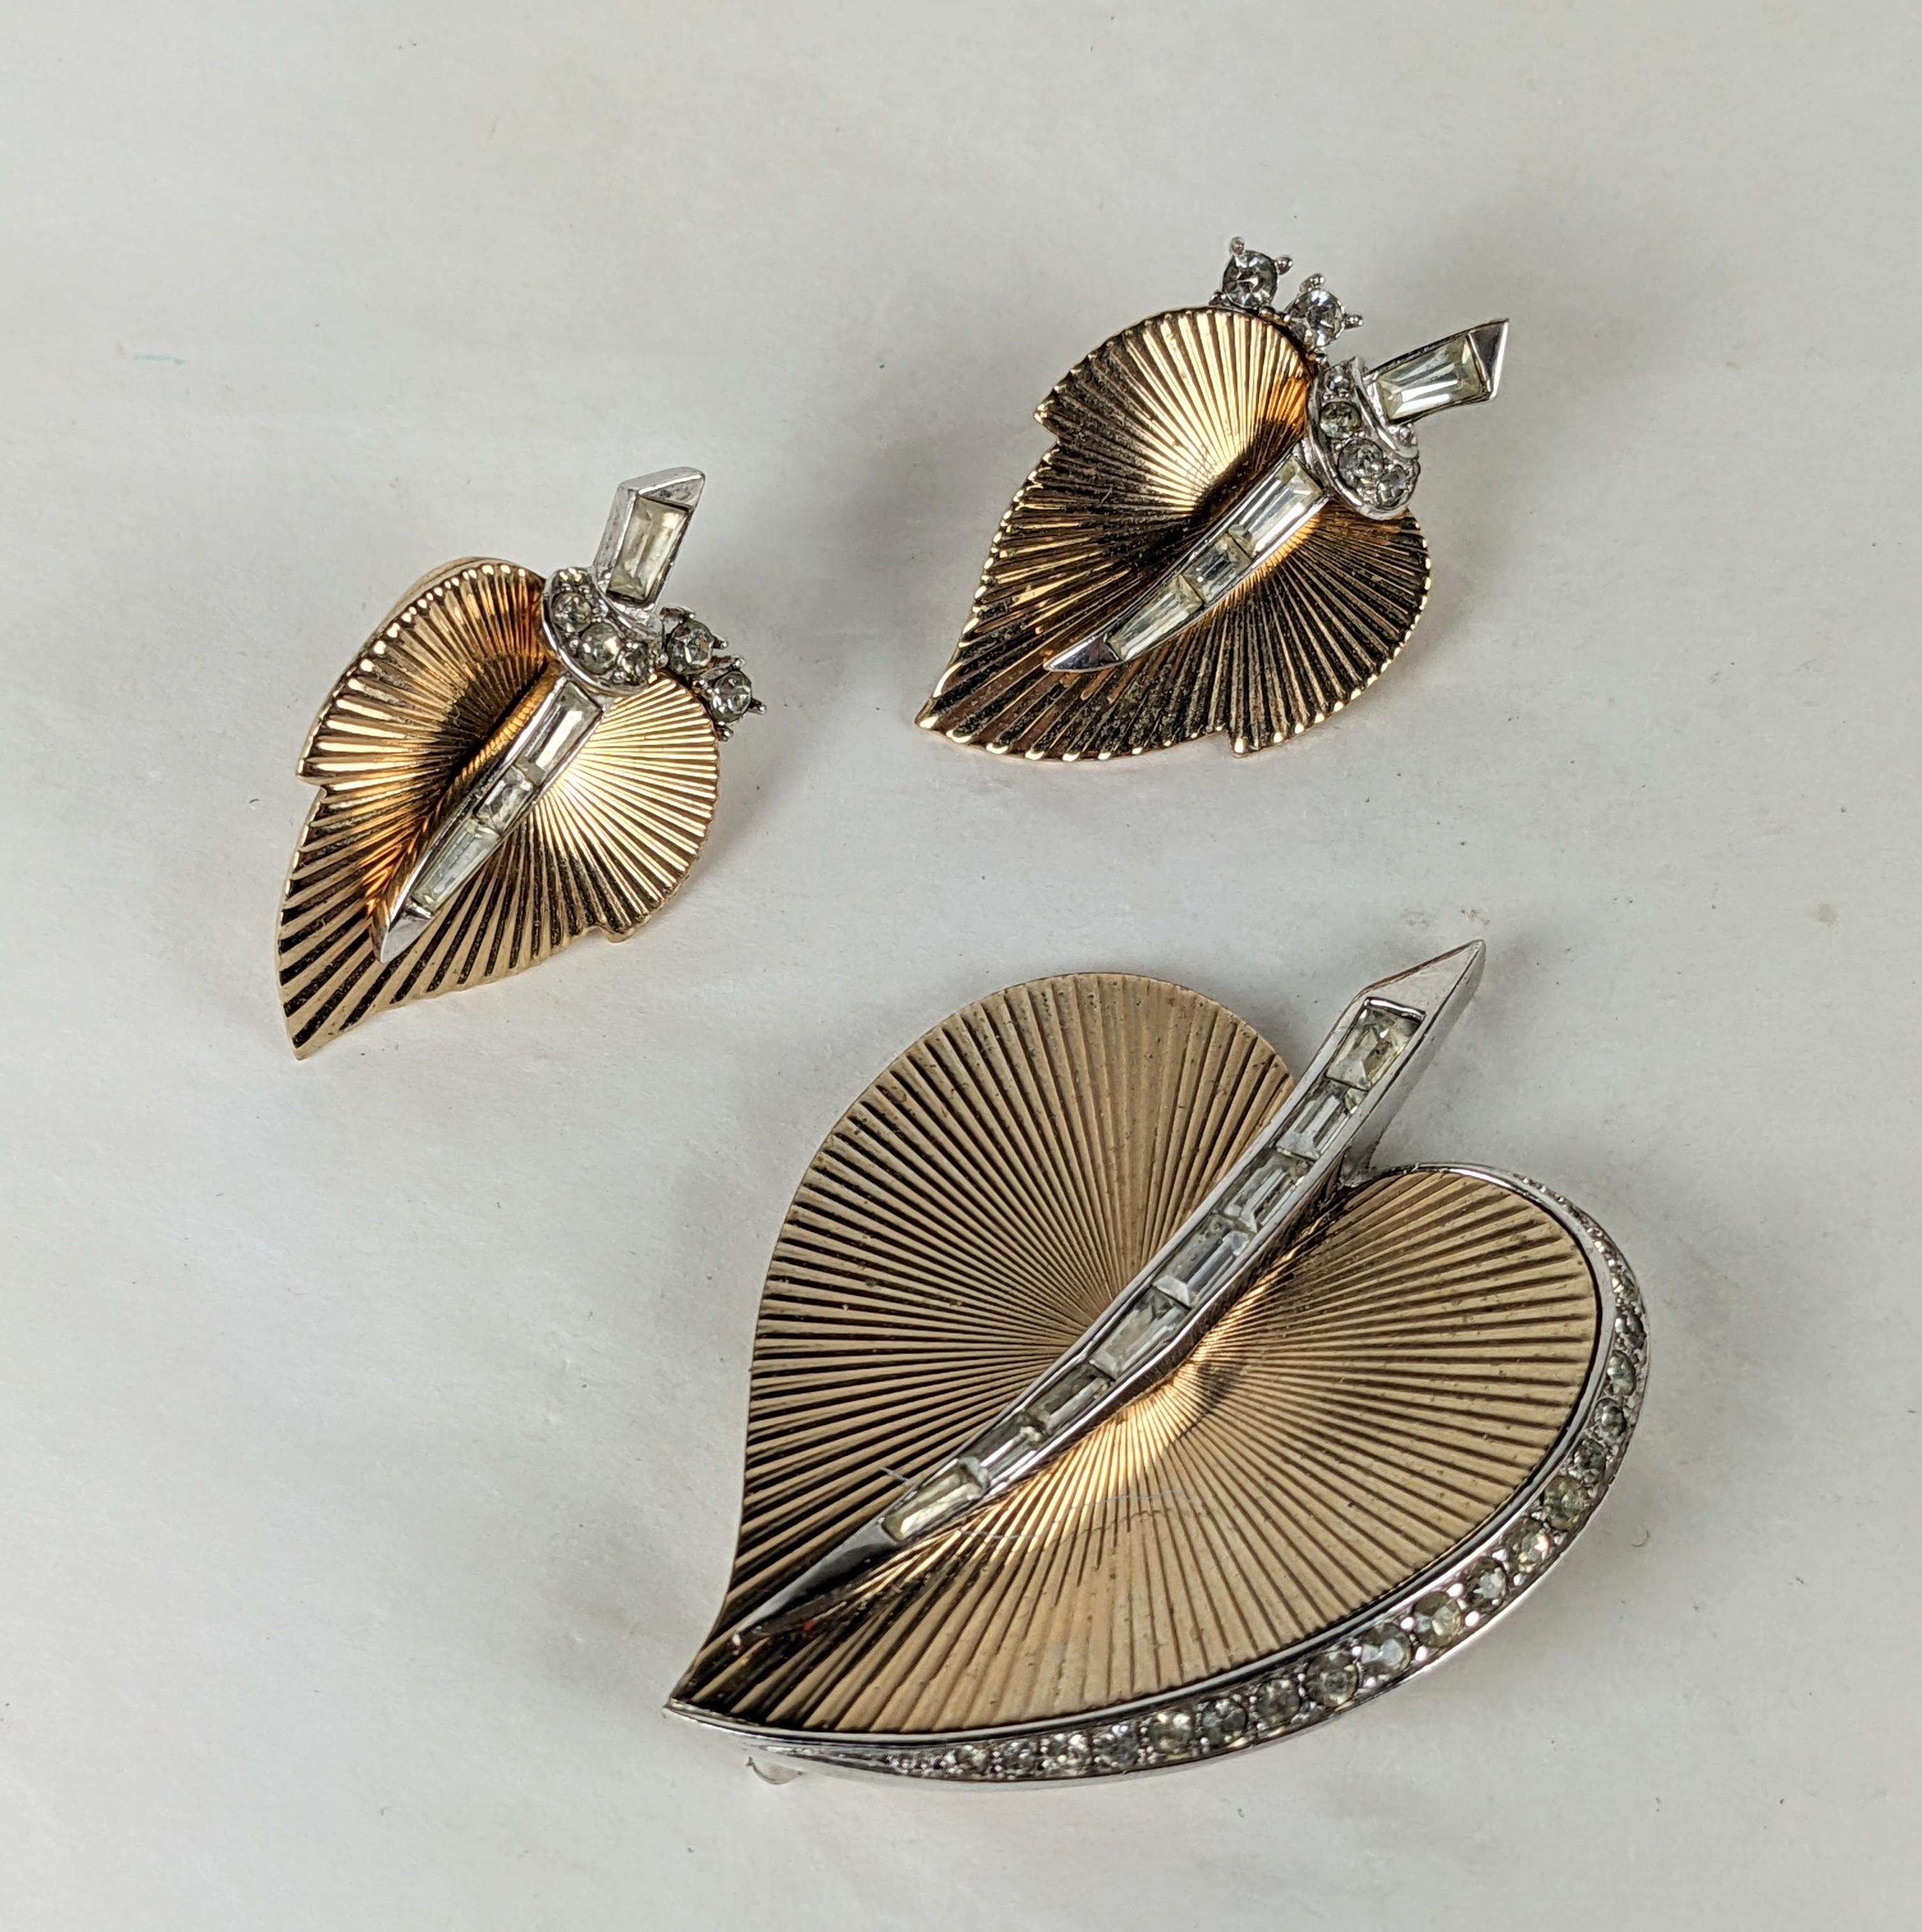 Suite de feuilles d'or nervurées de Marcel Boucher et clips d'oreilles assortis des années 1950. Elegant design rétro avec baguette et cristaux pavés. 
Broche 2.25